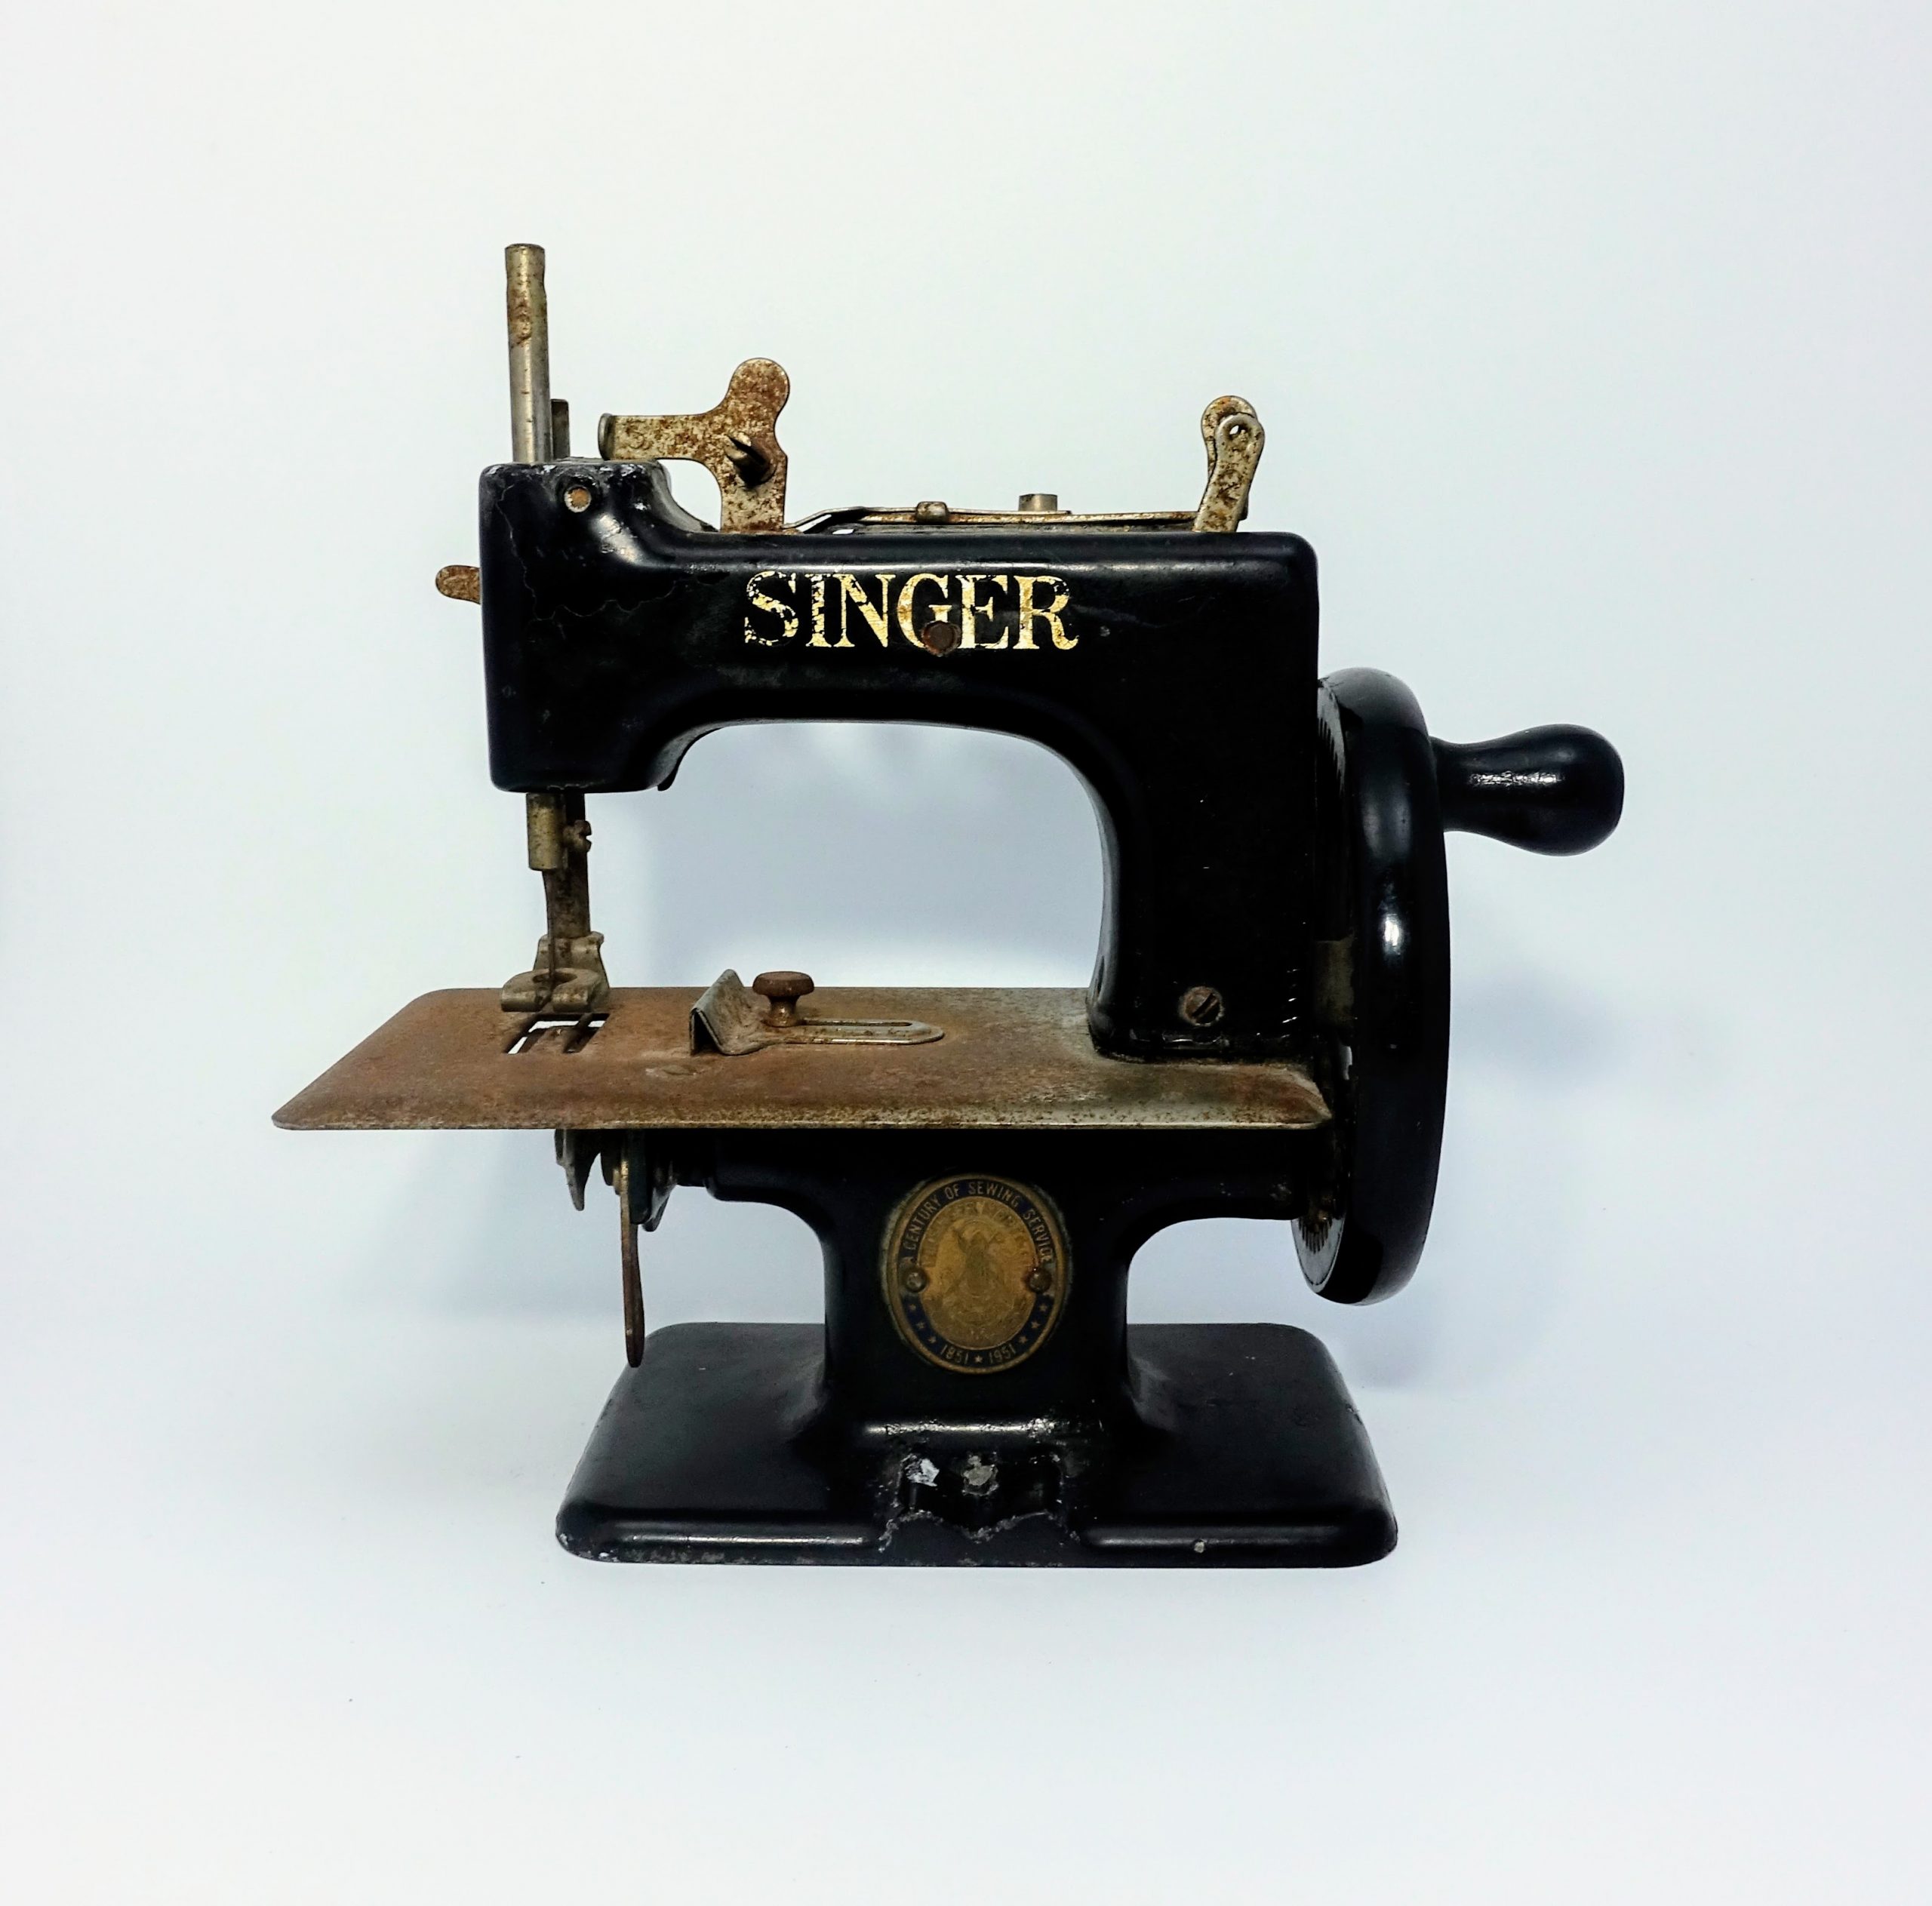 Antigua mini máquina de coser Singer Sewhandy modelo 20-10.